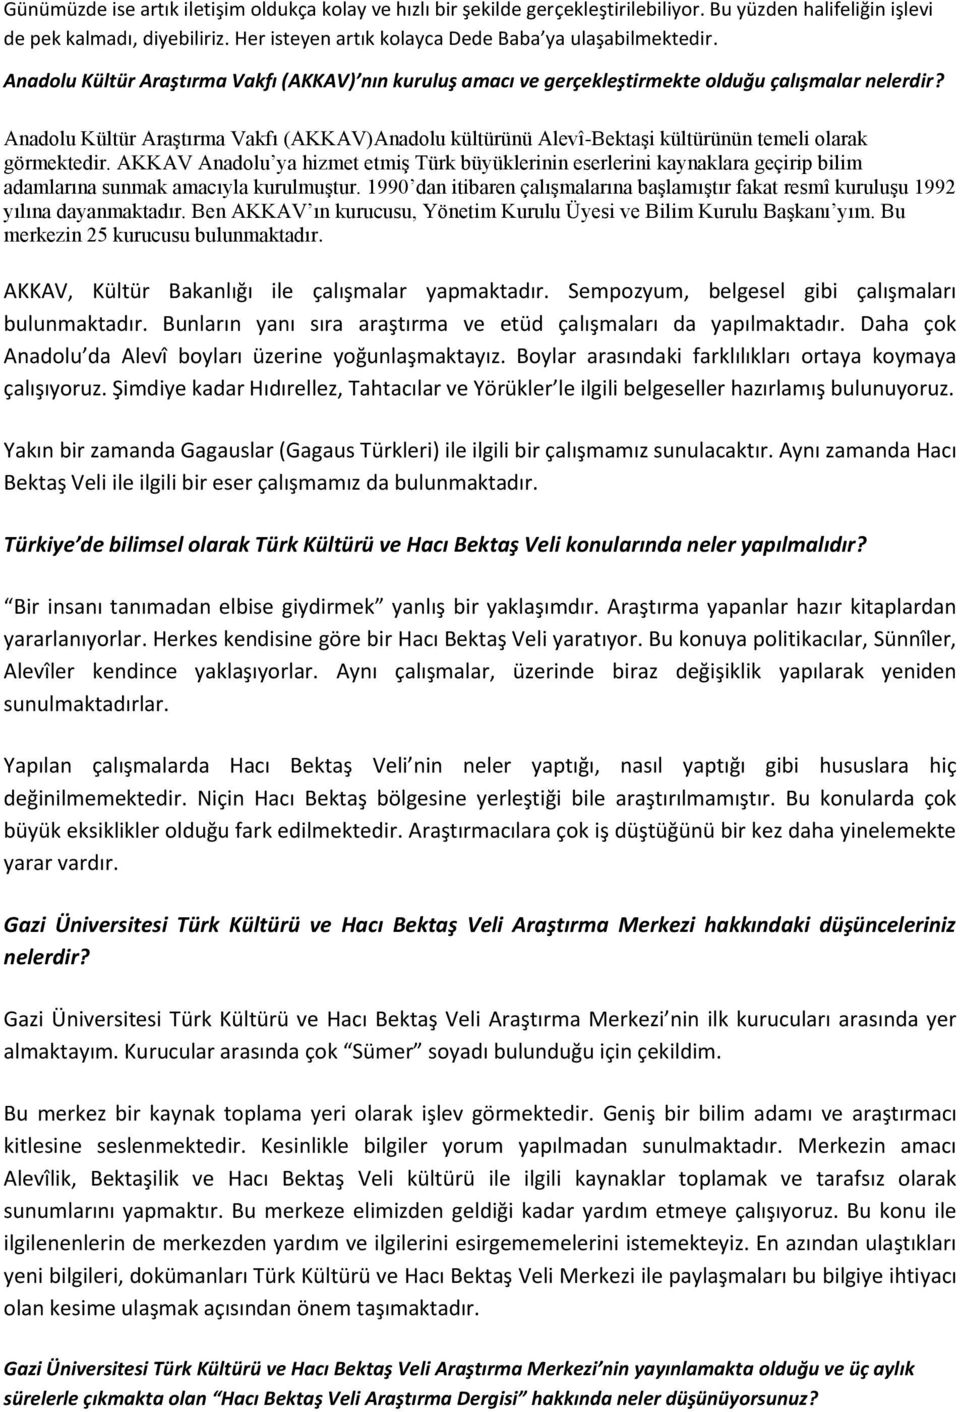 Anadolu Kültür Araştırma Vakfı (AKKAV)Anadolu kültürünü Alevî-Bektaşi kültürünün temeli olarak görmektedir.